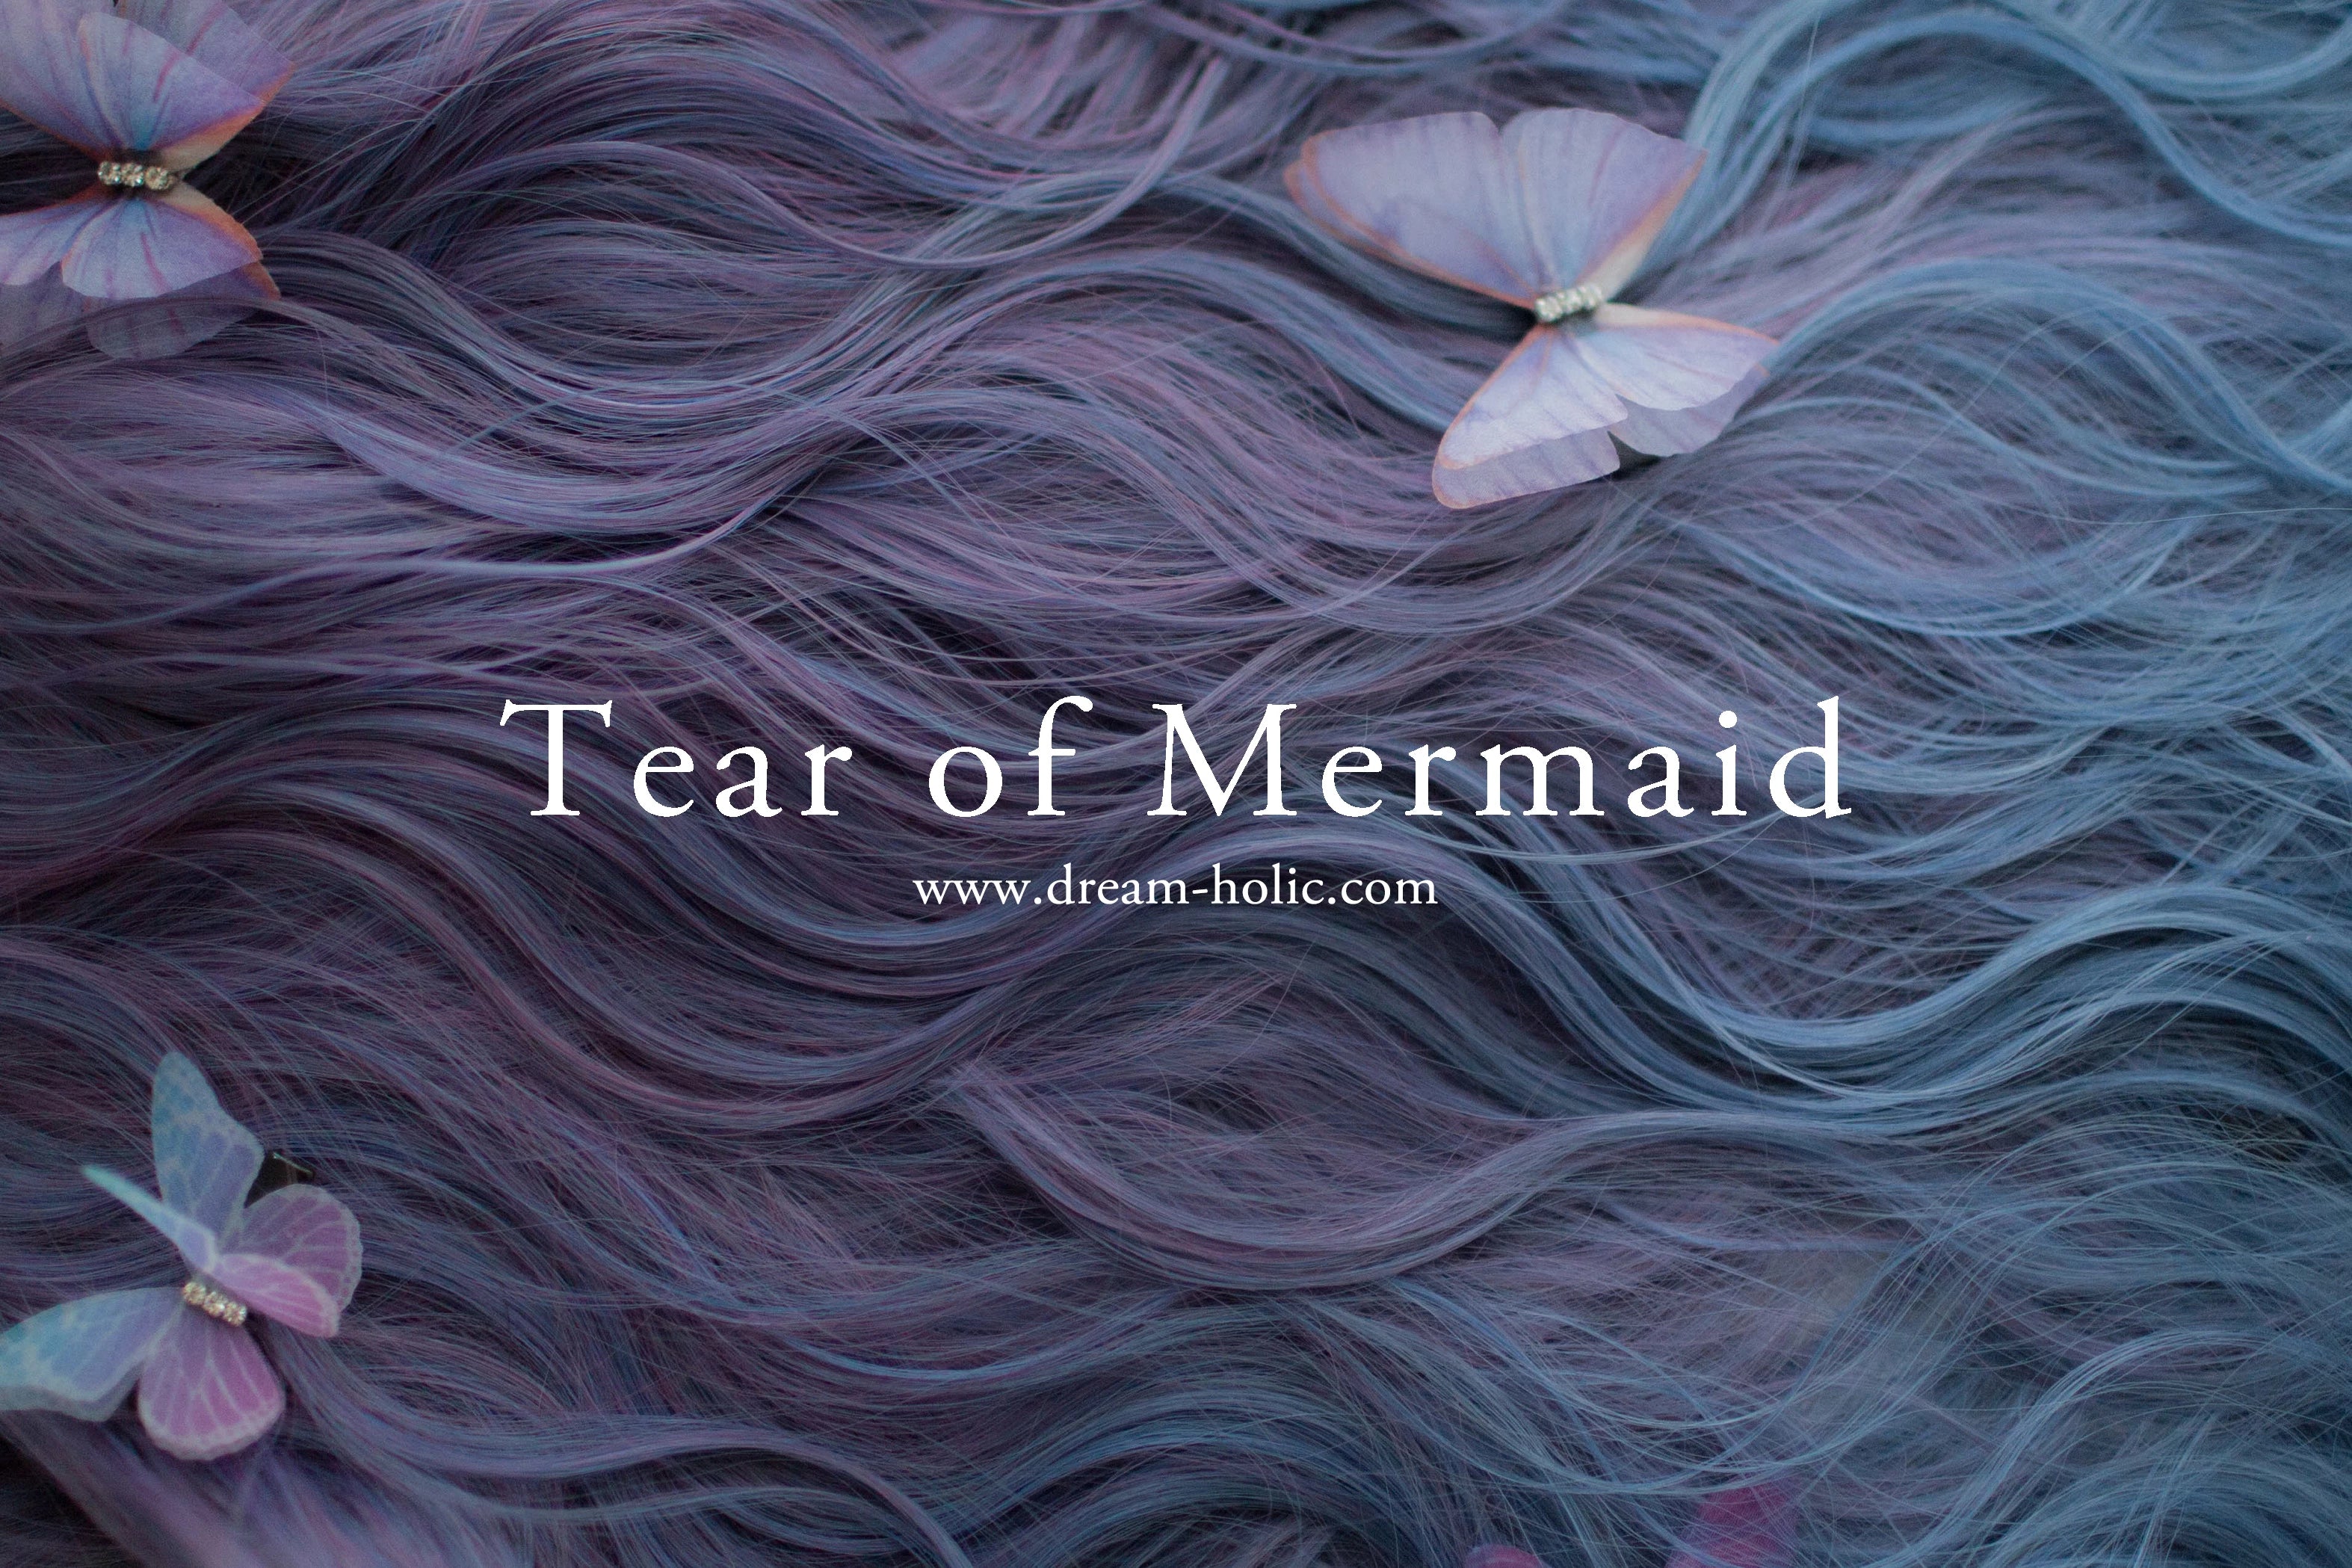 Tear of Mermaid